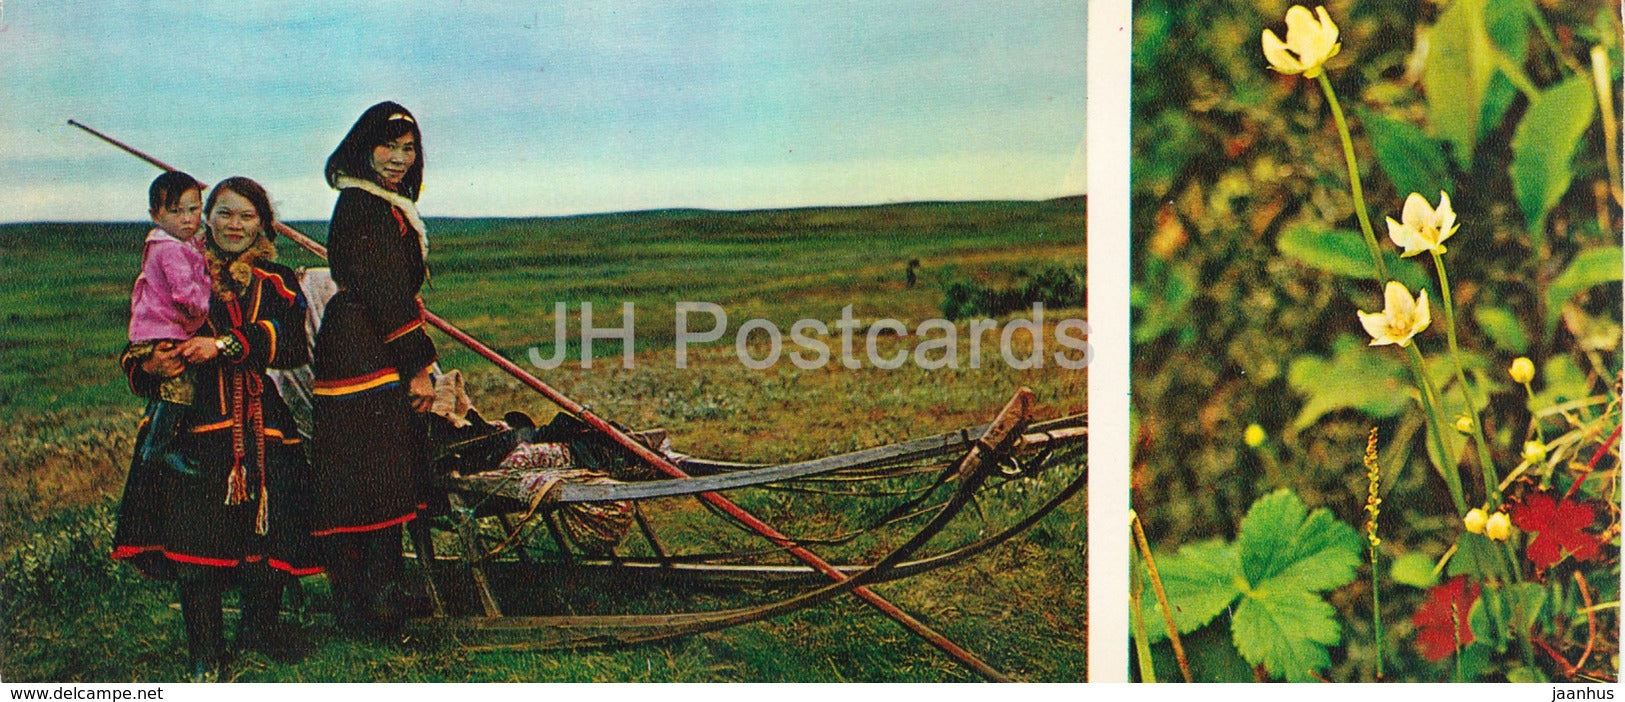 Belogor - native people - folk costumes - reindeer sledge - Tundra in bloom - 1973 - Russia USSR - unused - JH Postcards